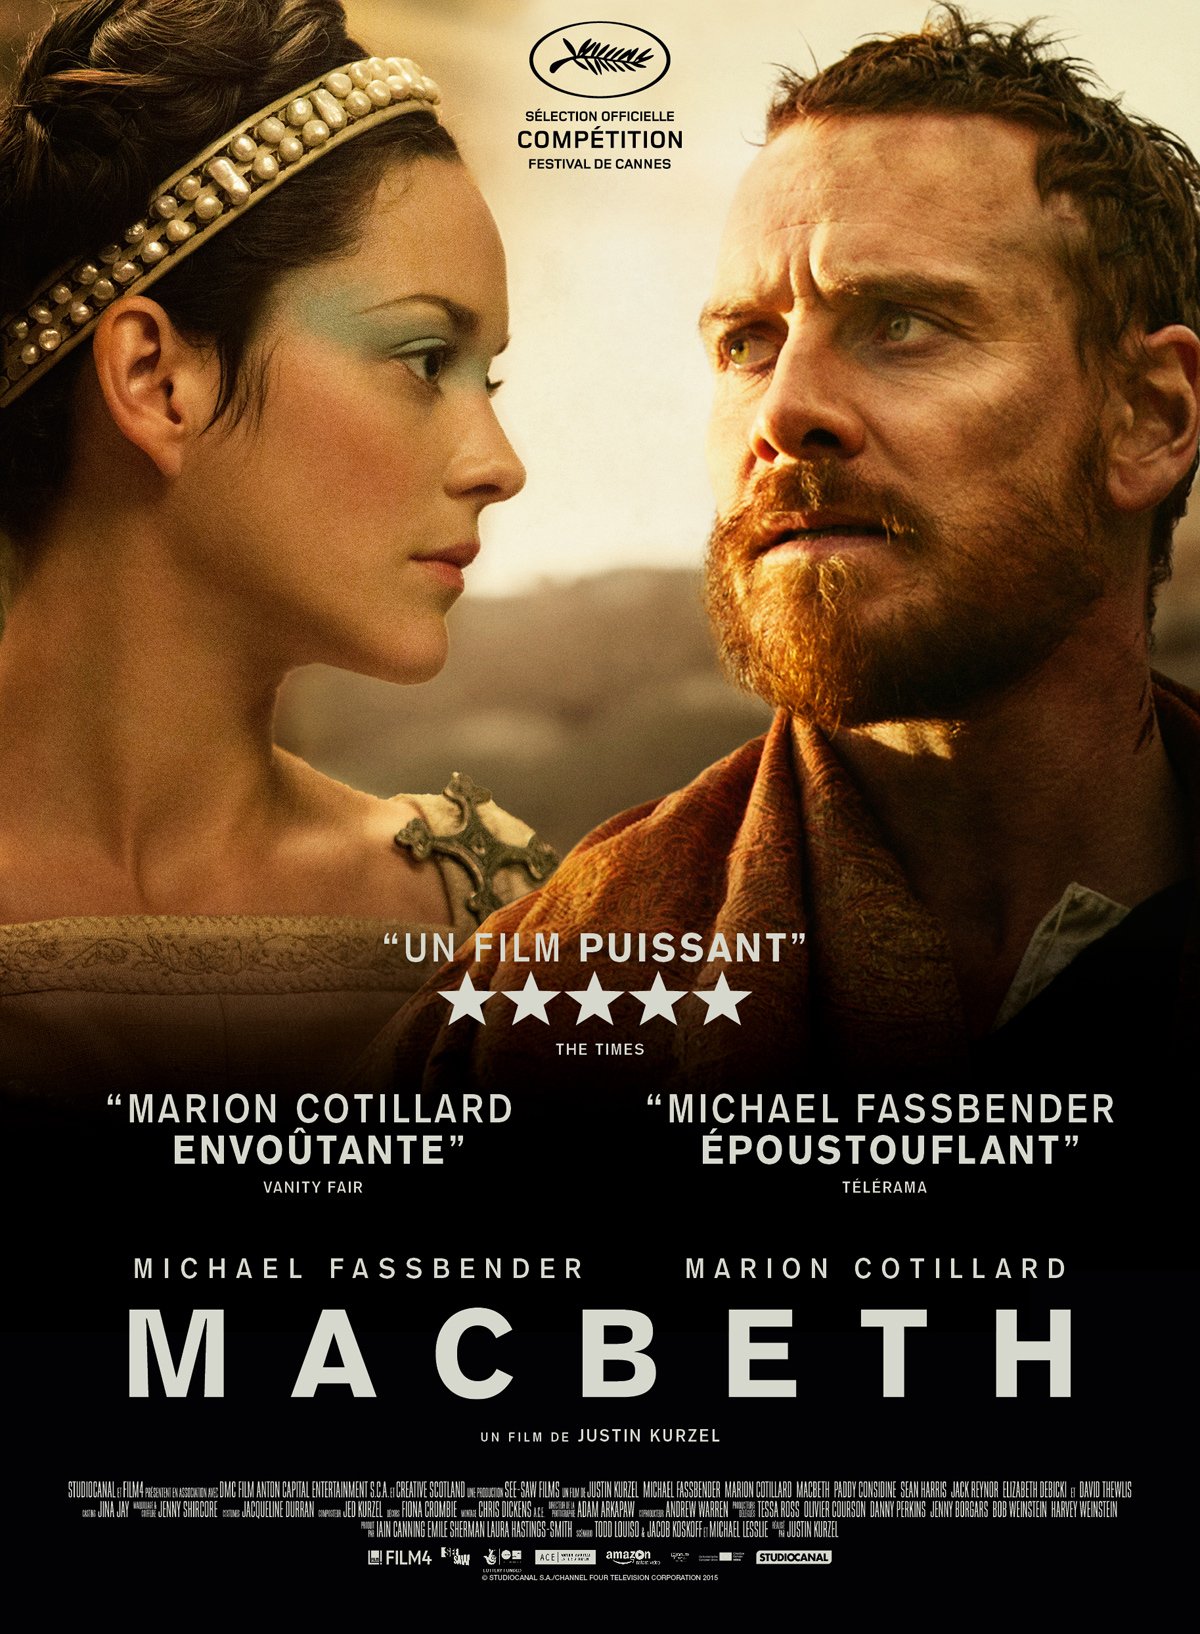 Résultat de recherche d'images pour "Macbeth"